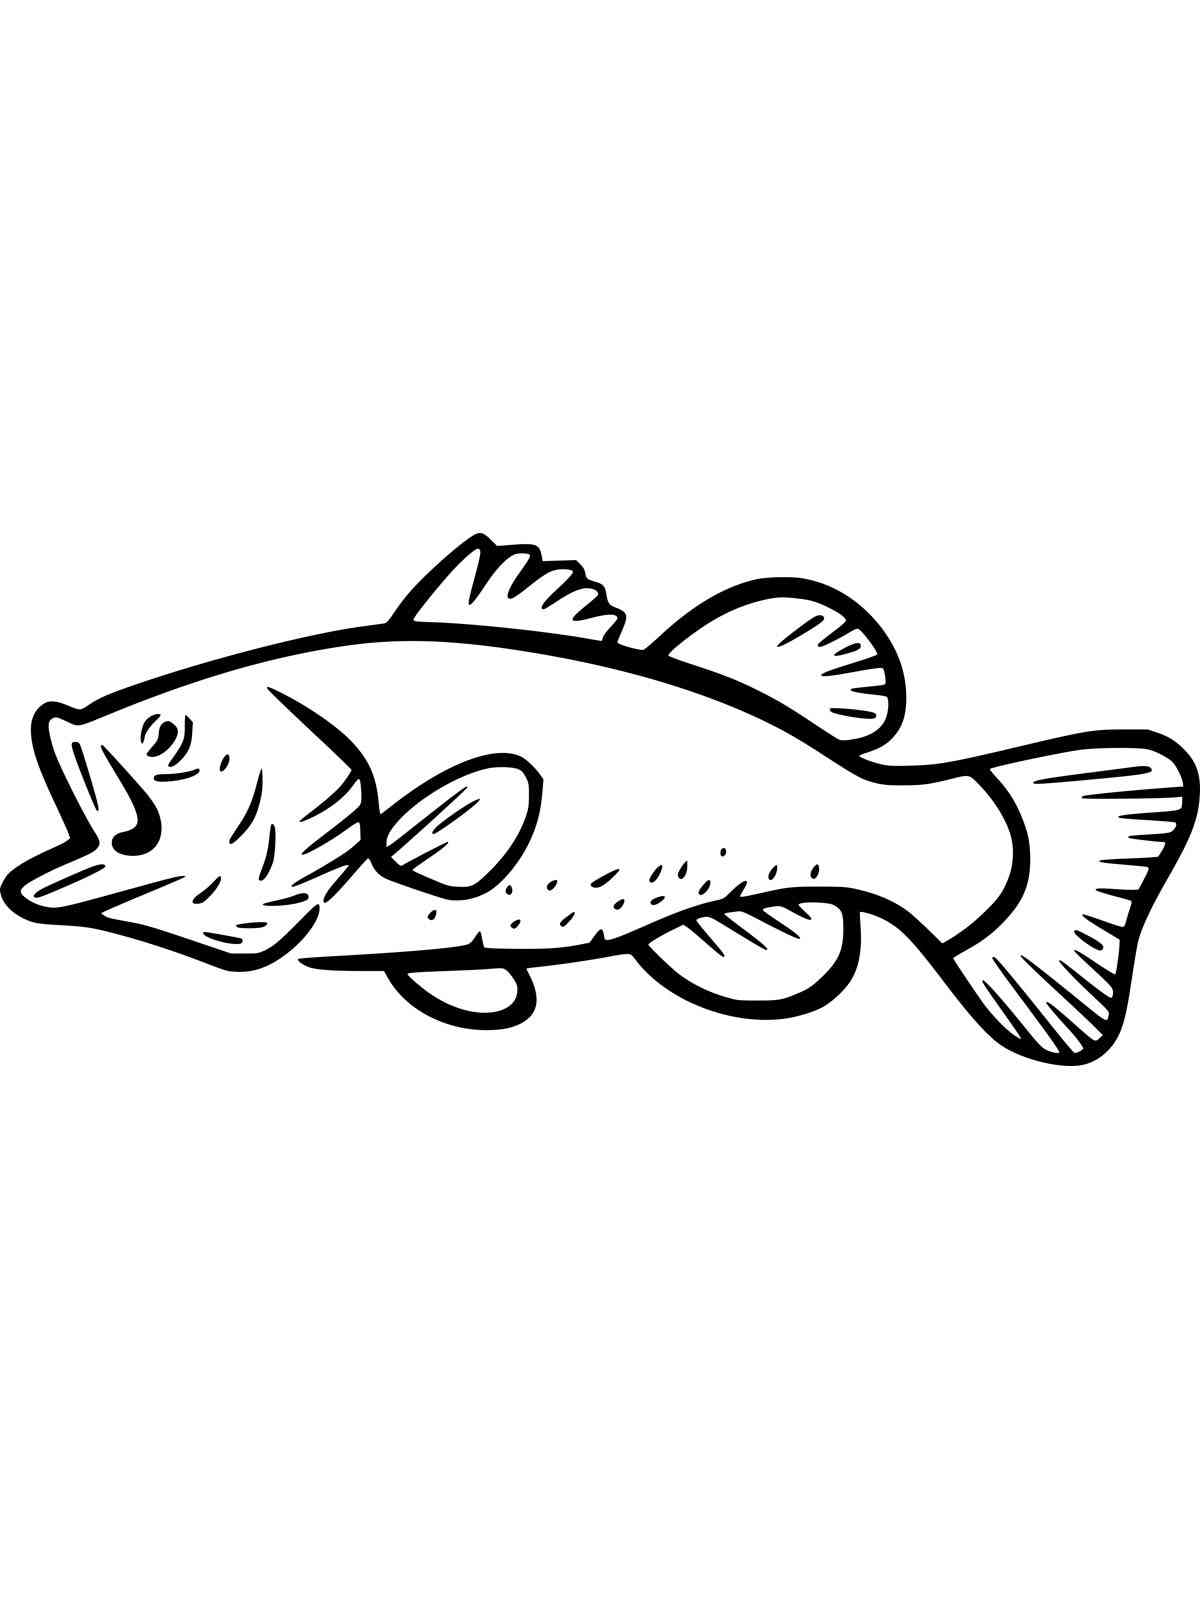 Drawn Bass Fish coloring page